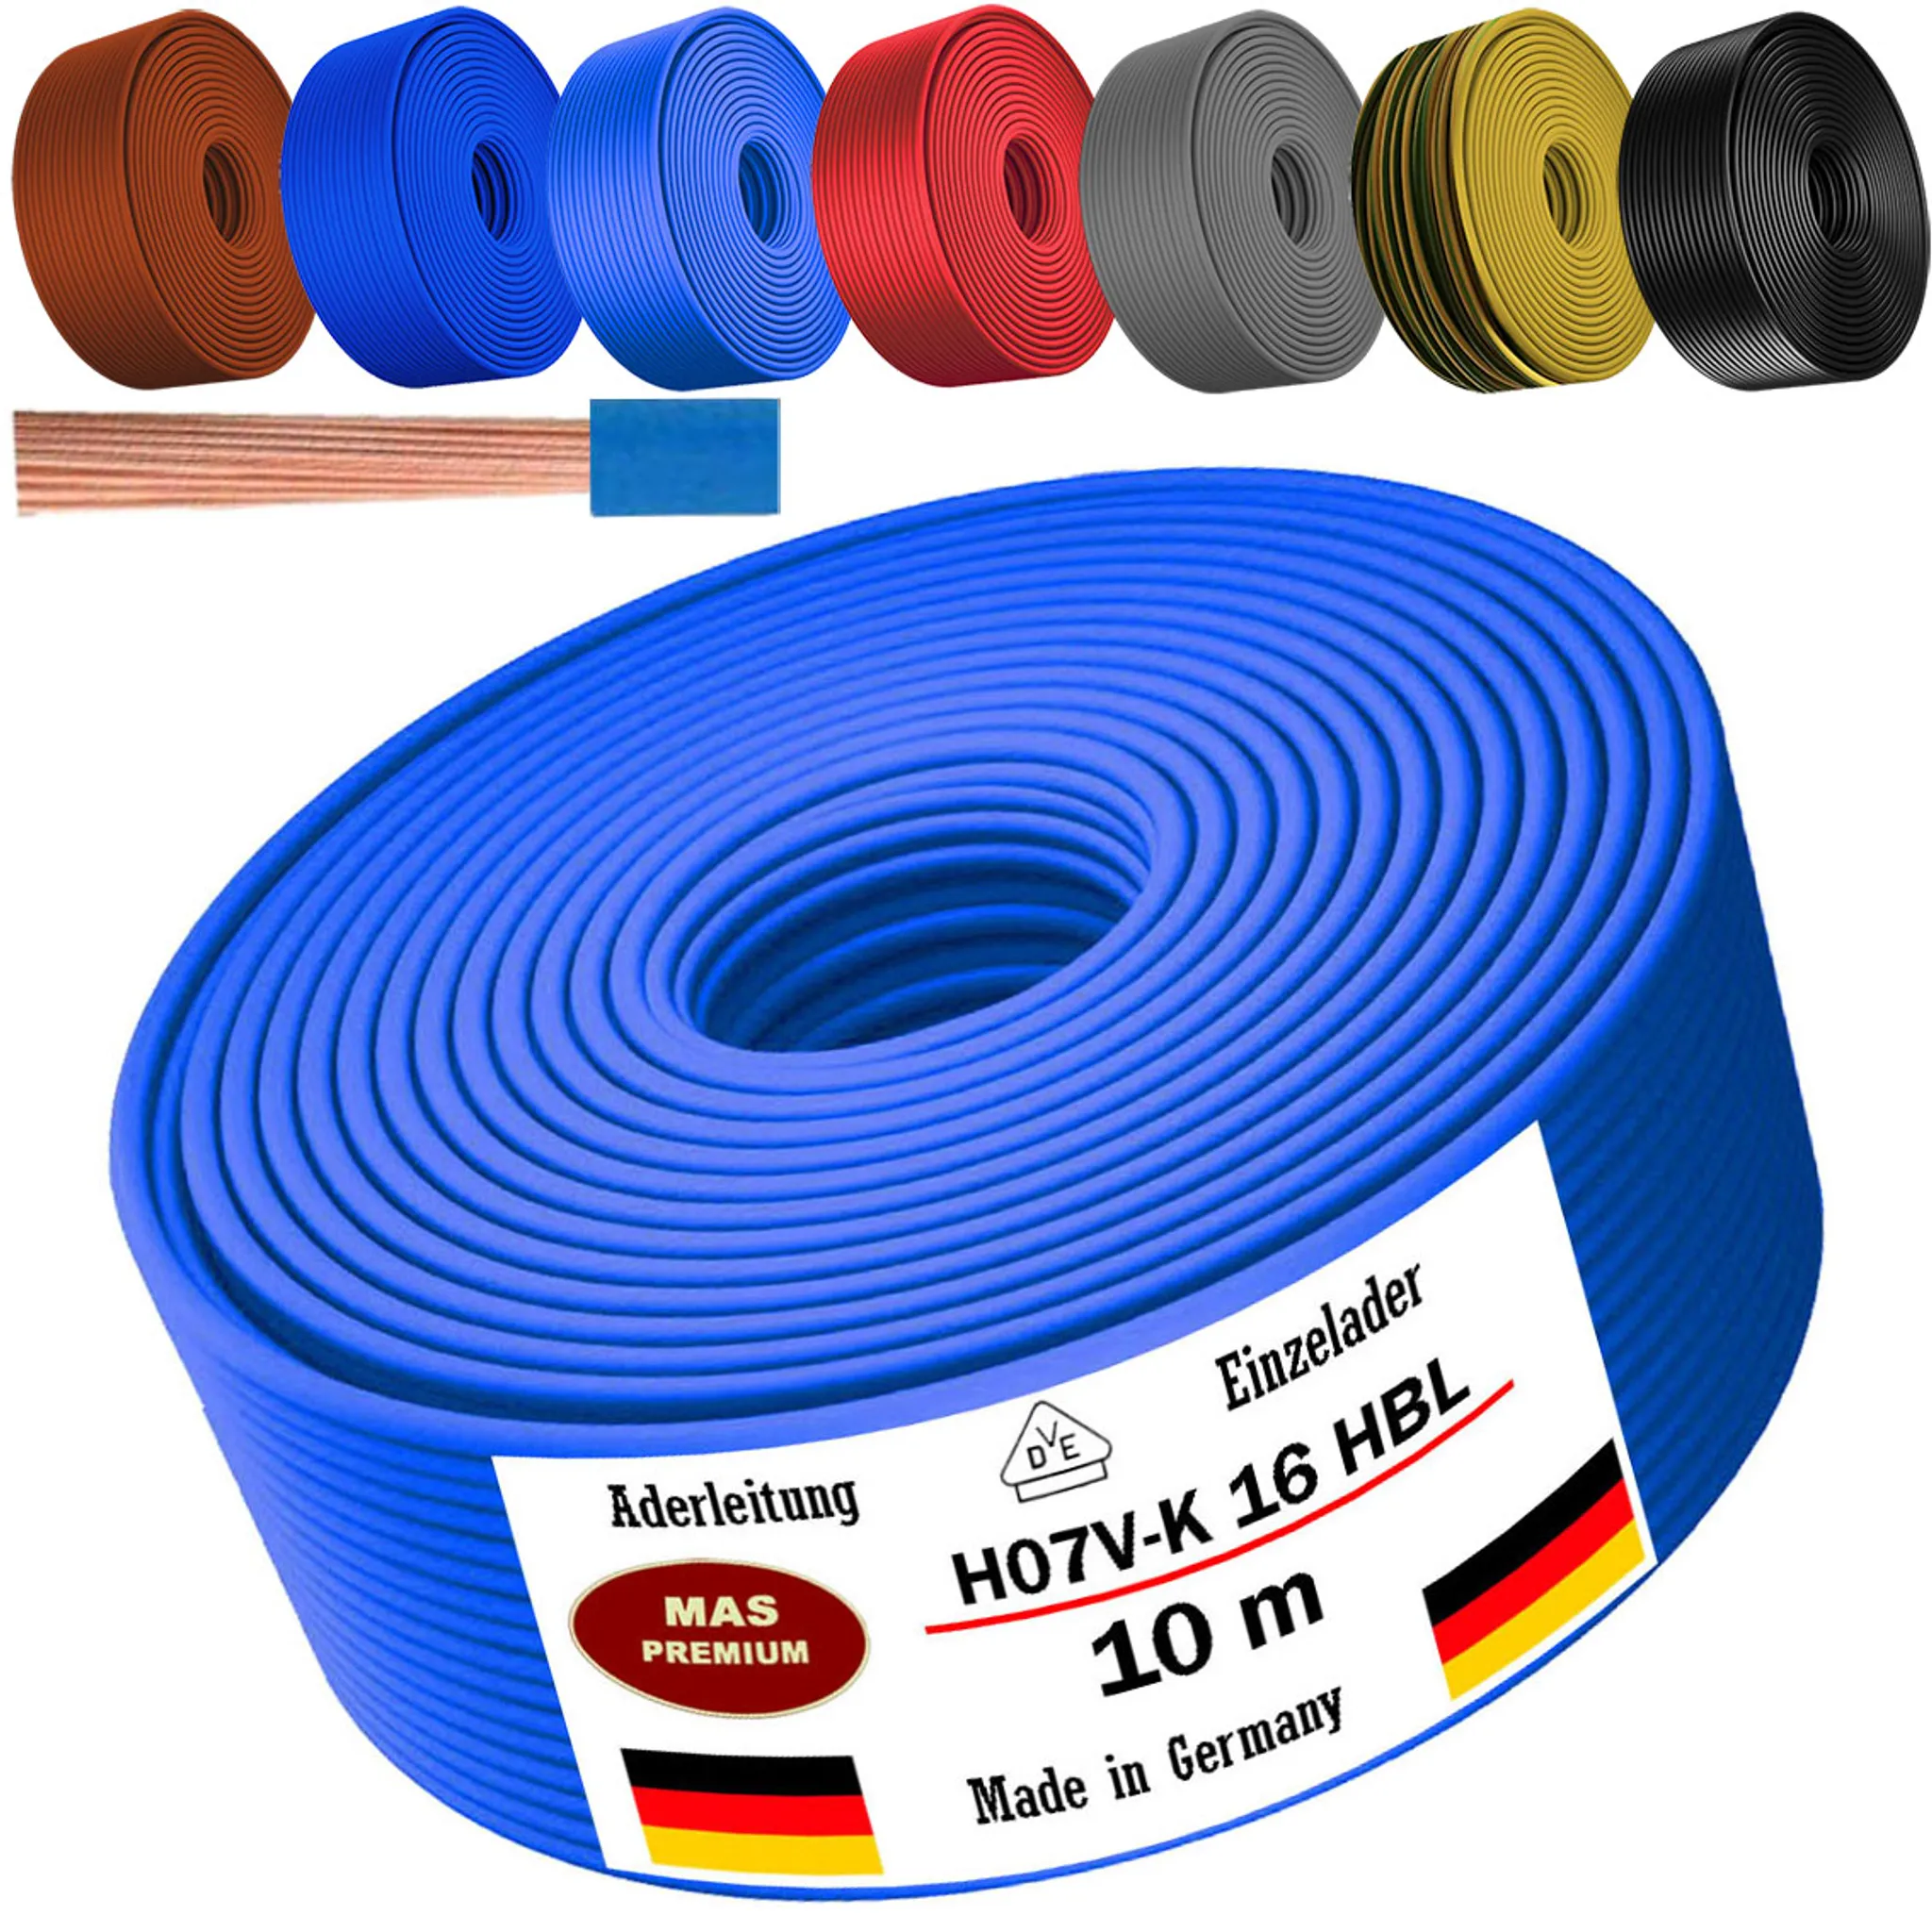 10m Aderleitung H07 V-K HBL 1x16 mm² Hellblau